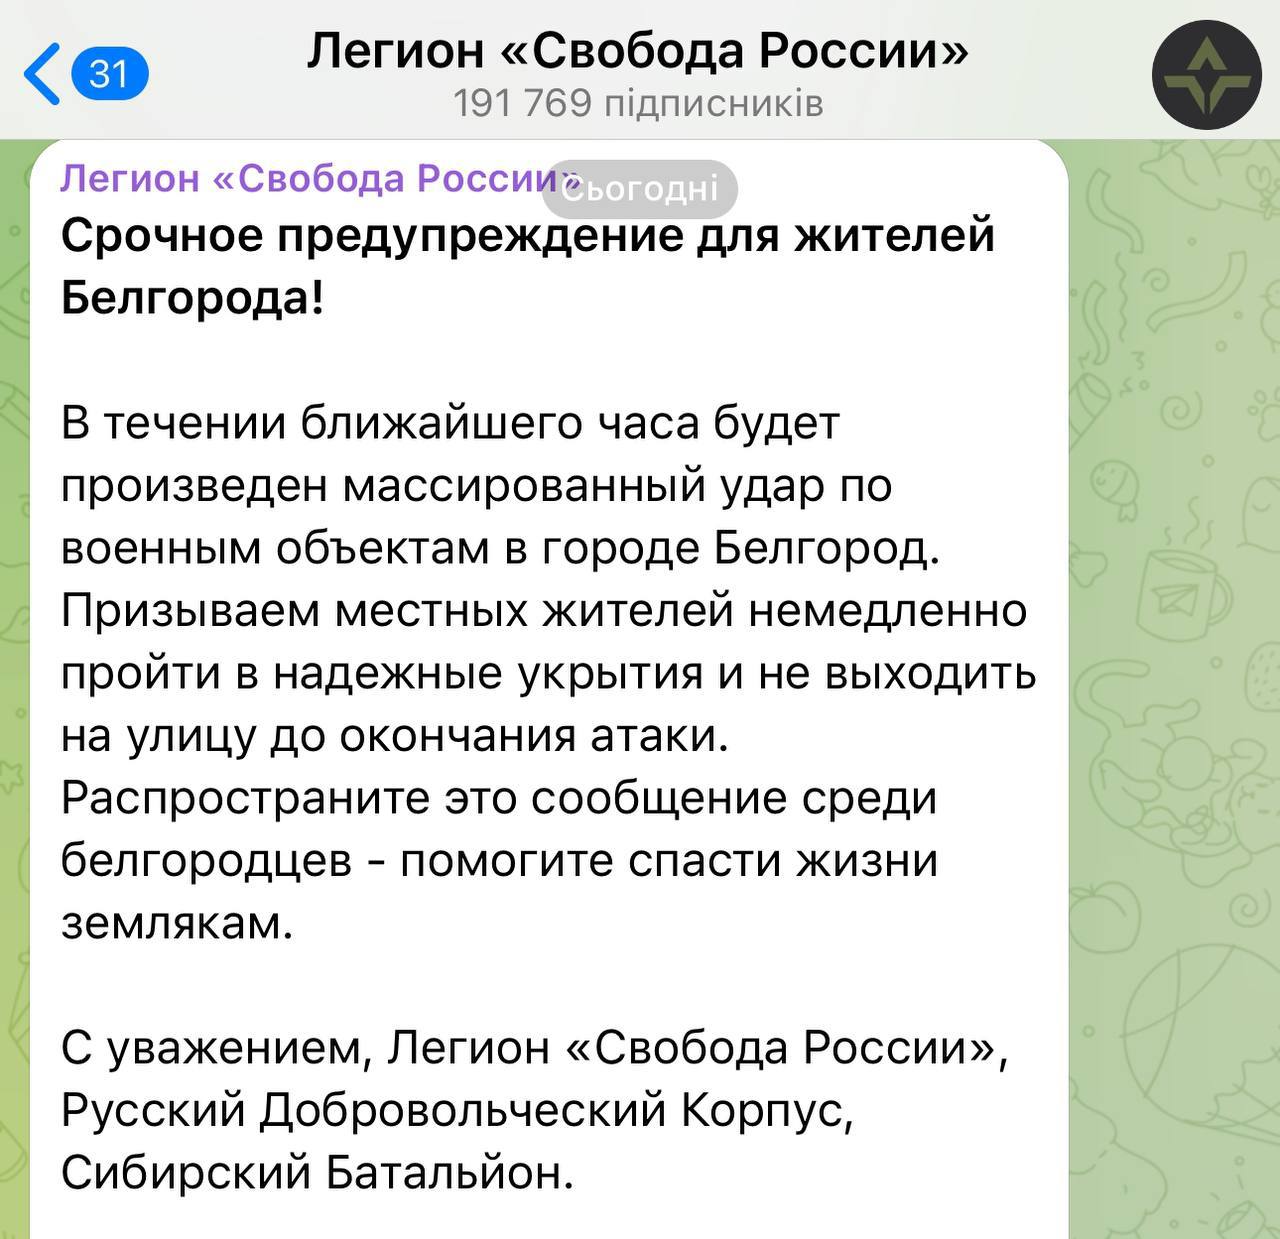 ​"Немедленно в укрытия", - РДК и Легион экстренно обратились к Белгороду